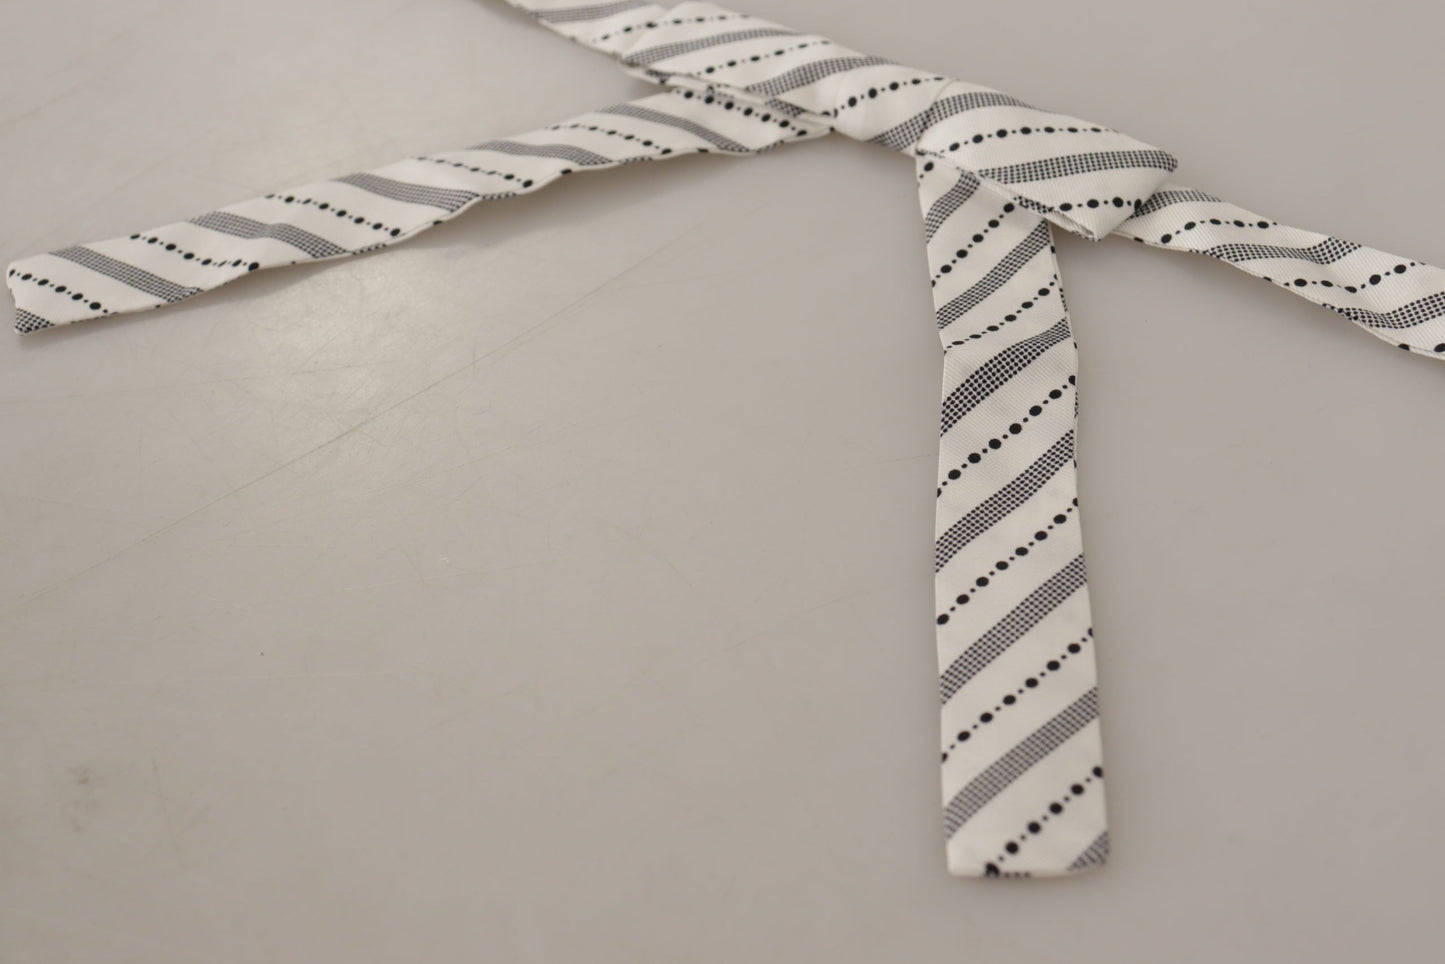 Dolce & Gabbana Weißer schwarzer Polka Punkt 100% Seidenhals Papillon Fliege Krawatte